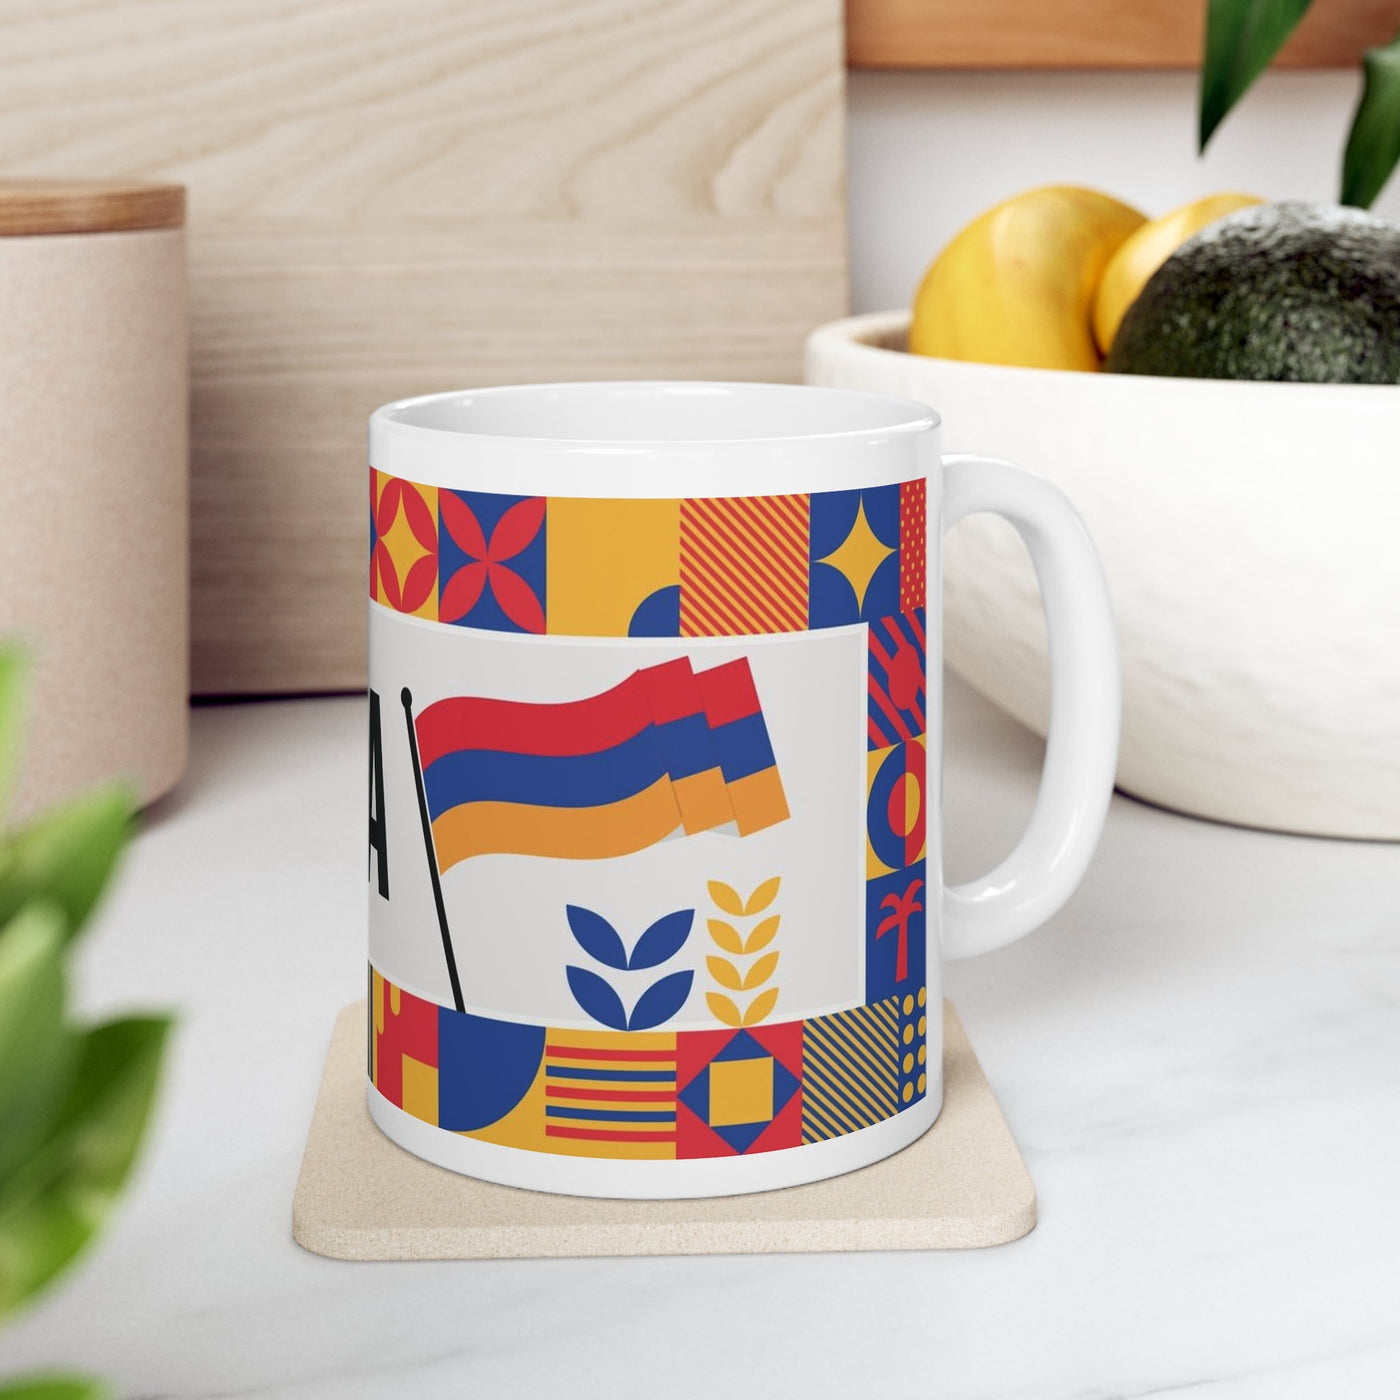 Armenia Coffee Mug - Ezra's Clothing